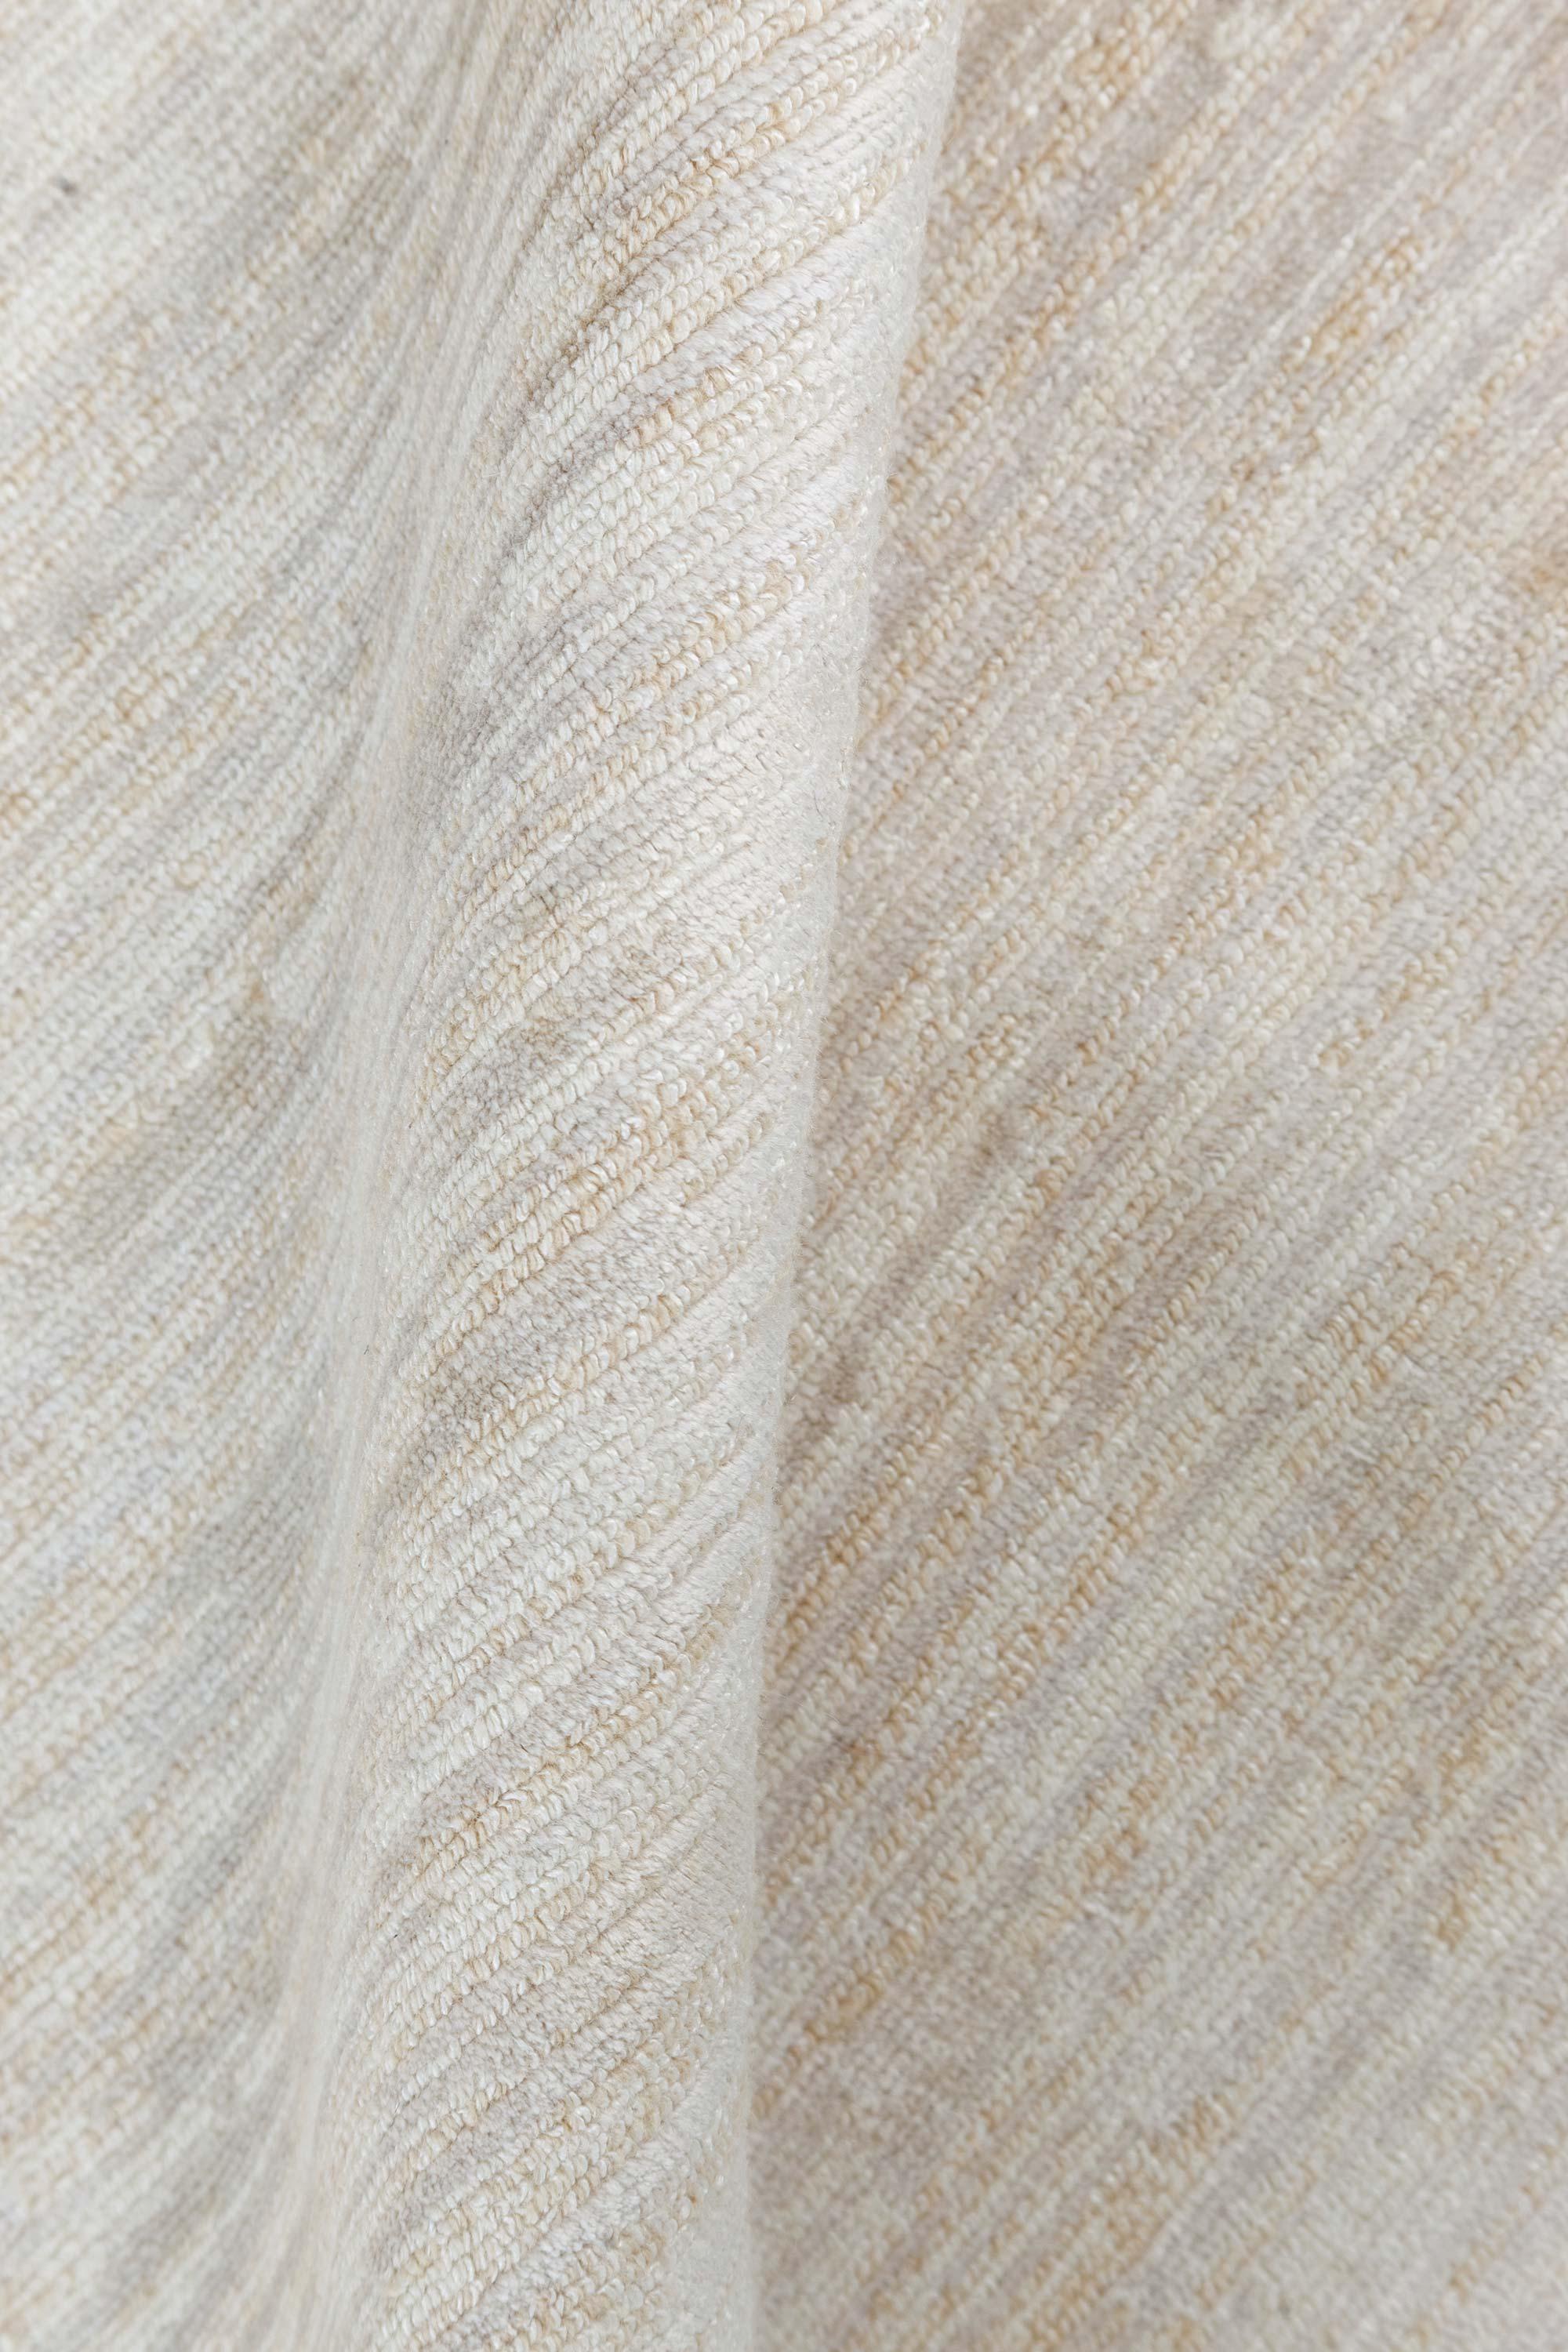 Moderner handgeknüpfter Teppich aus Wolle in Beige, Grau und Gold von Doris Leslie Blau
Größe: 4'6